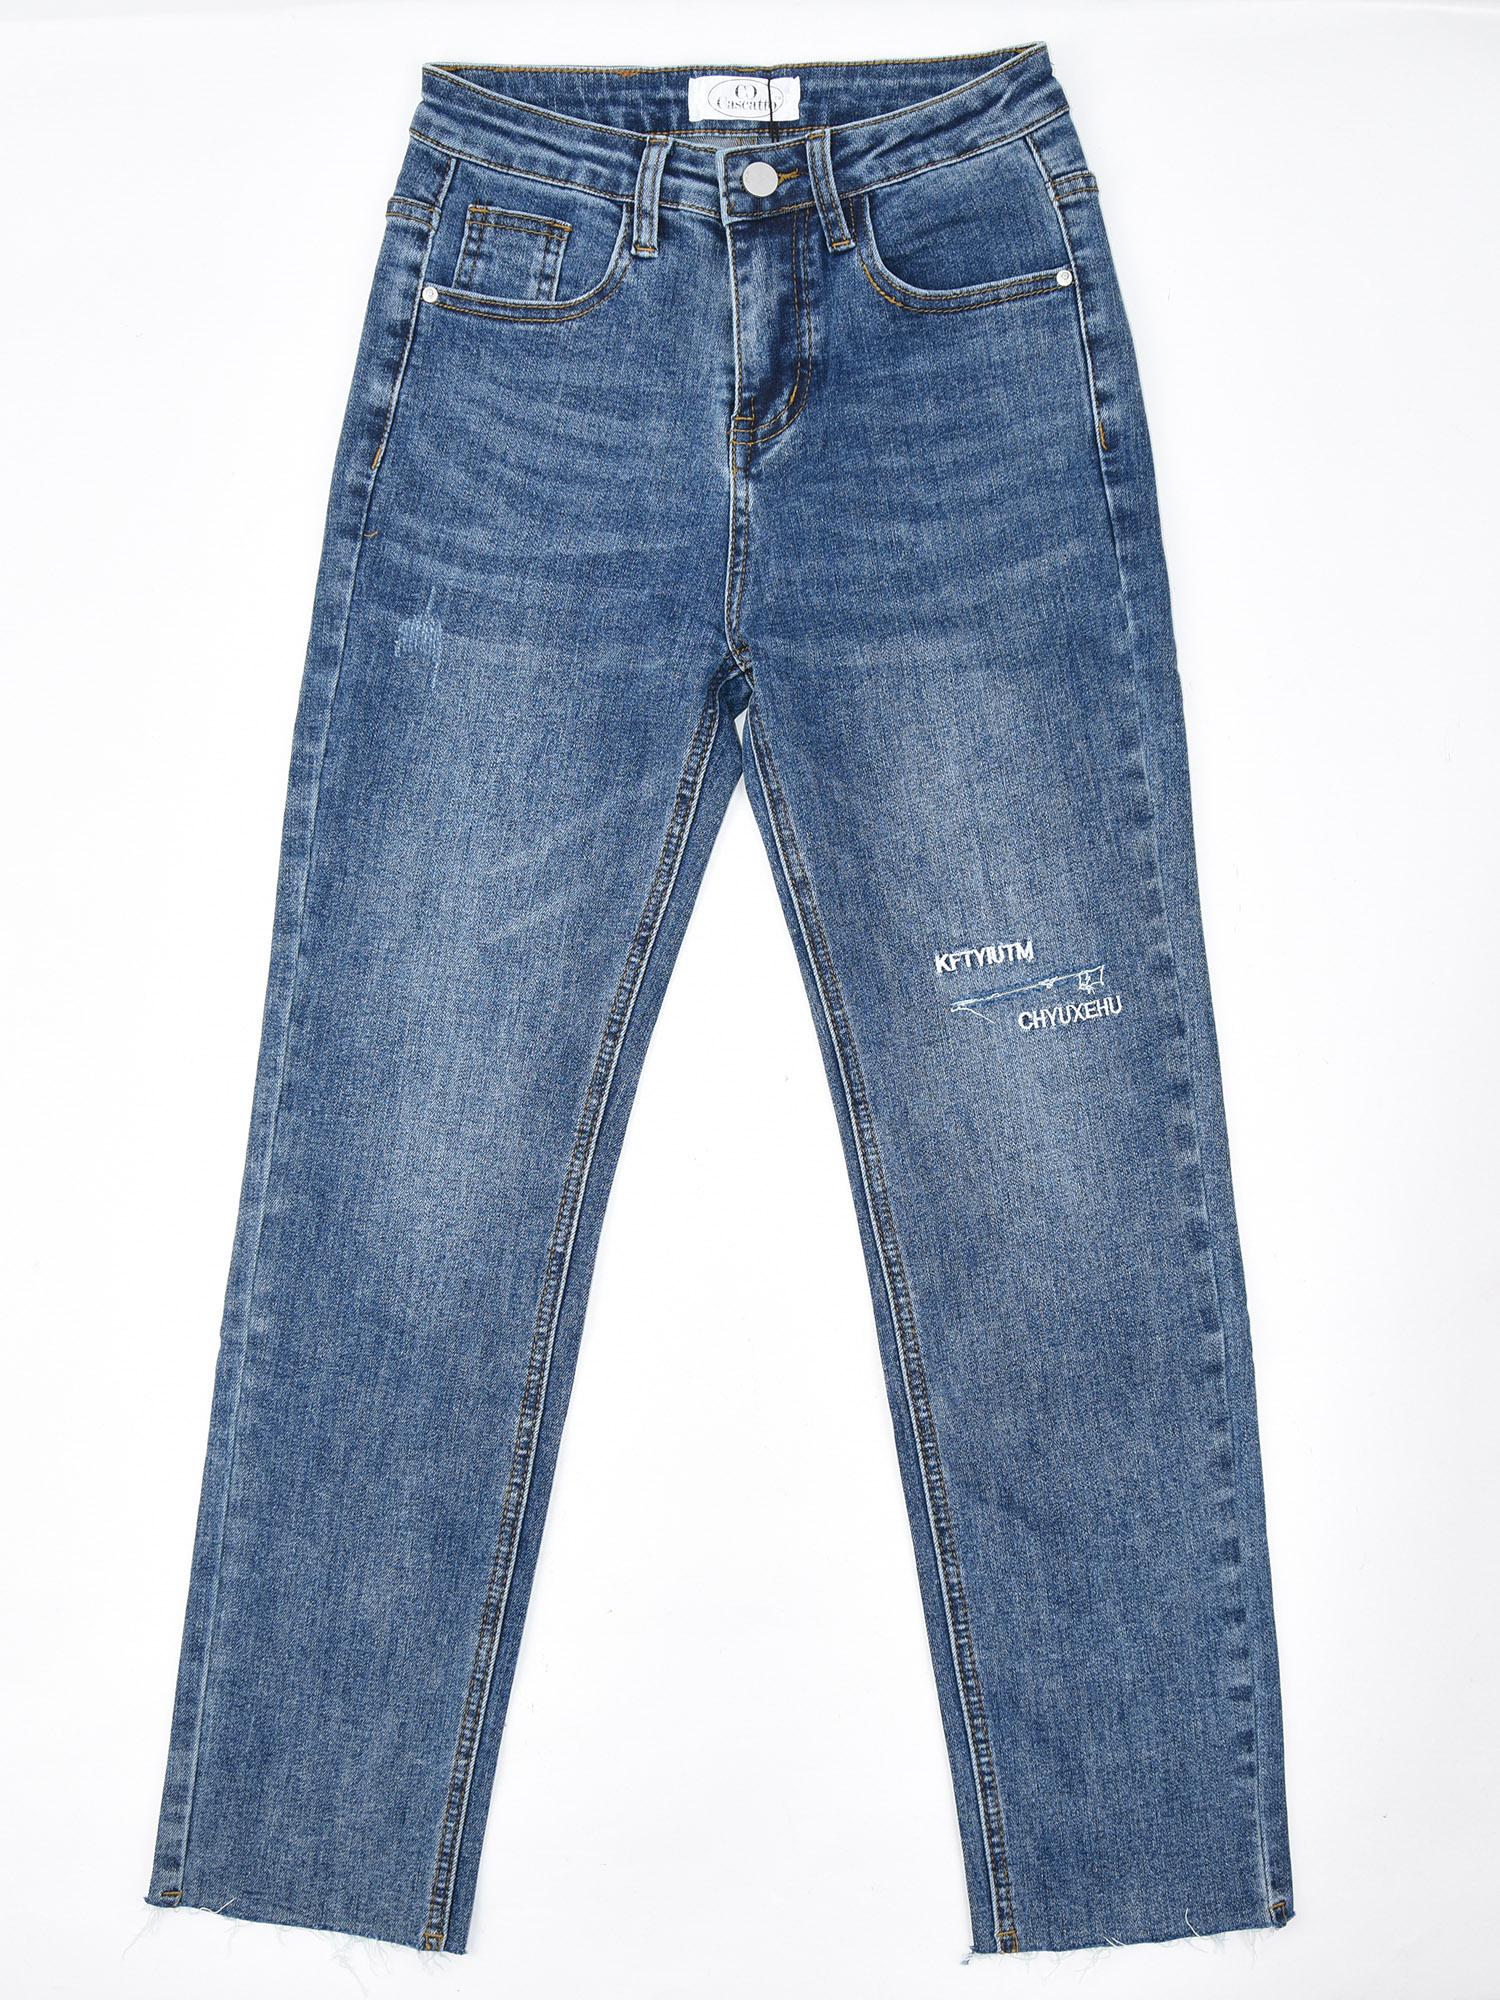 Купить Брюки женские джинсовые 22DGG29 синий